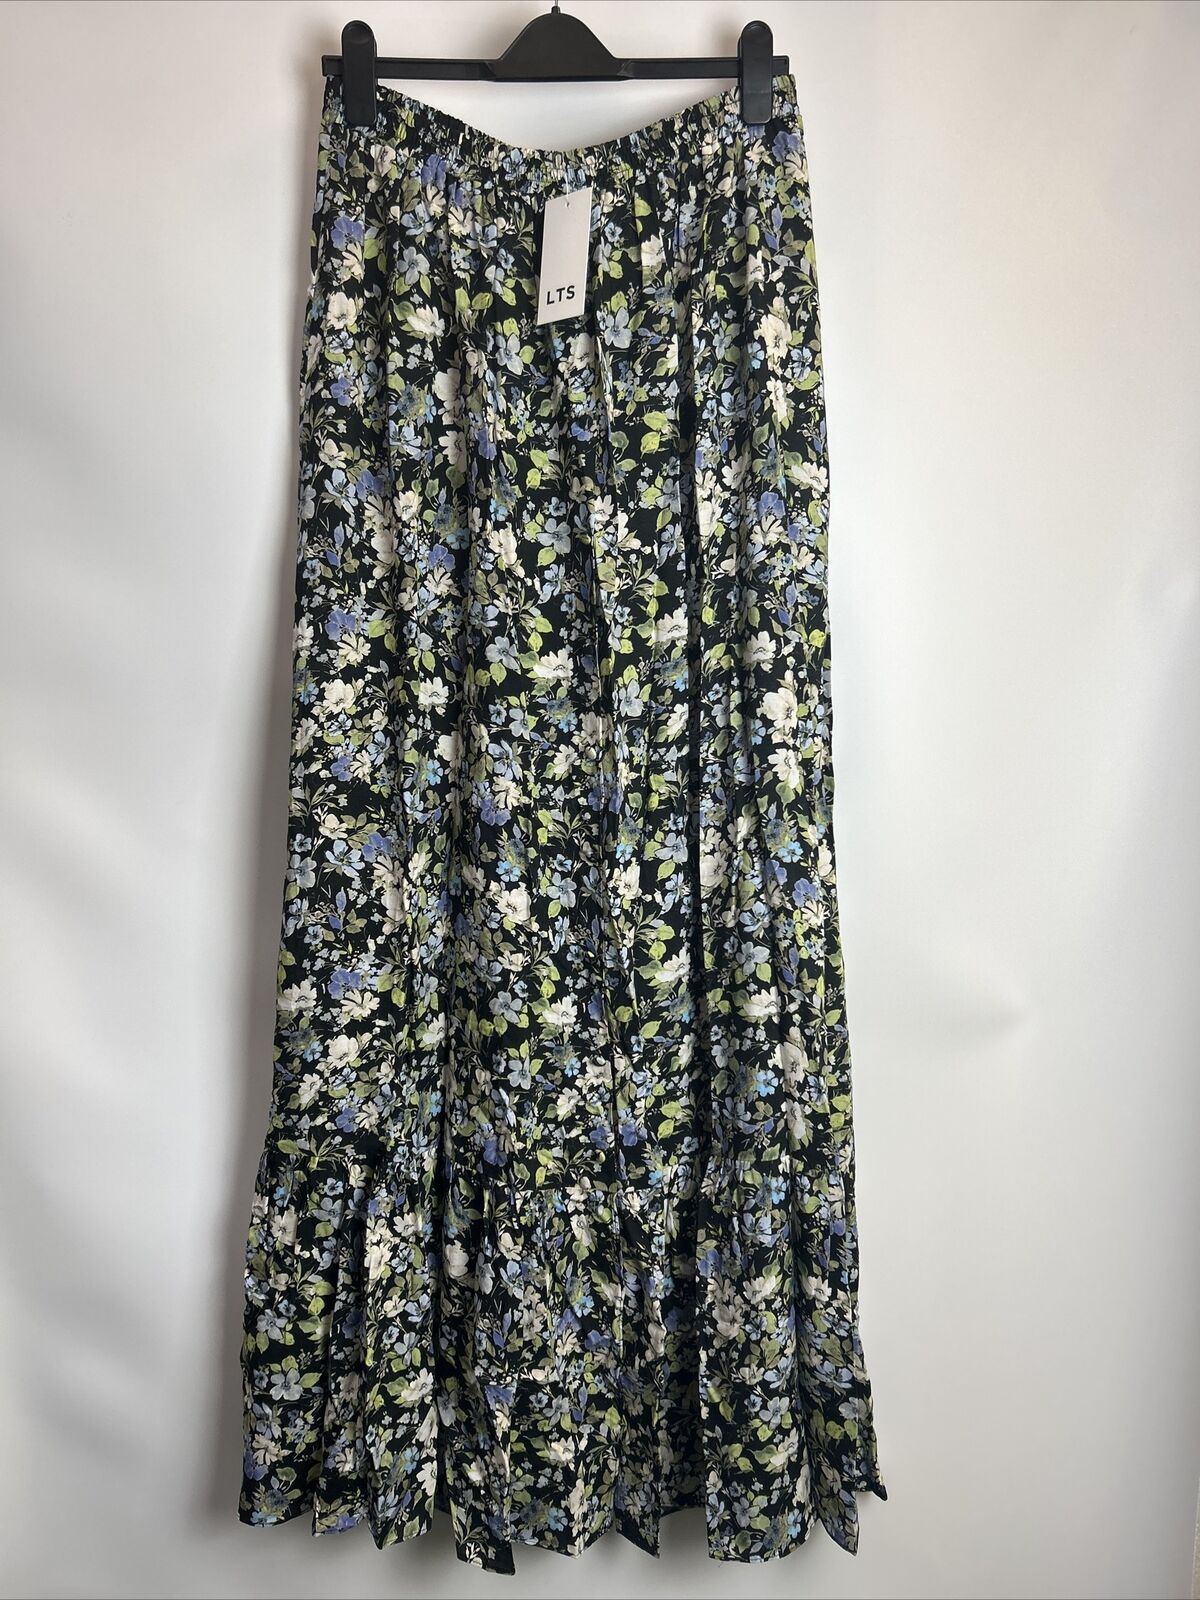 LTS Skirt - Black/Blue Floral. UK 14 **** Ref V520